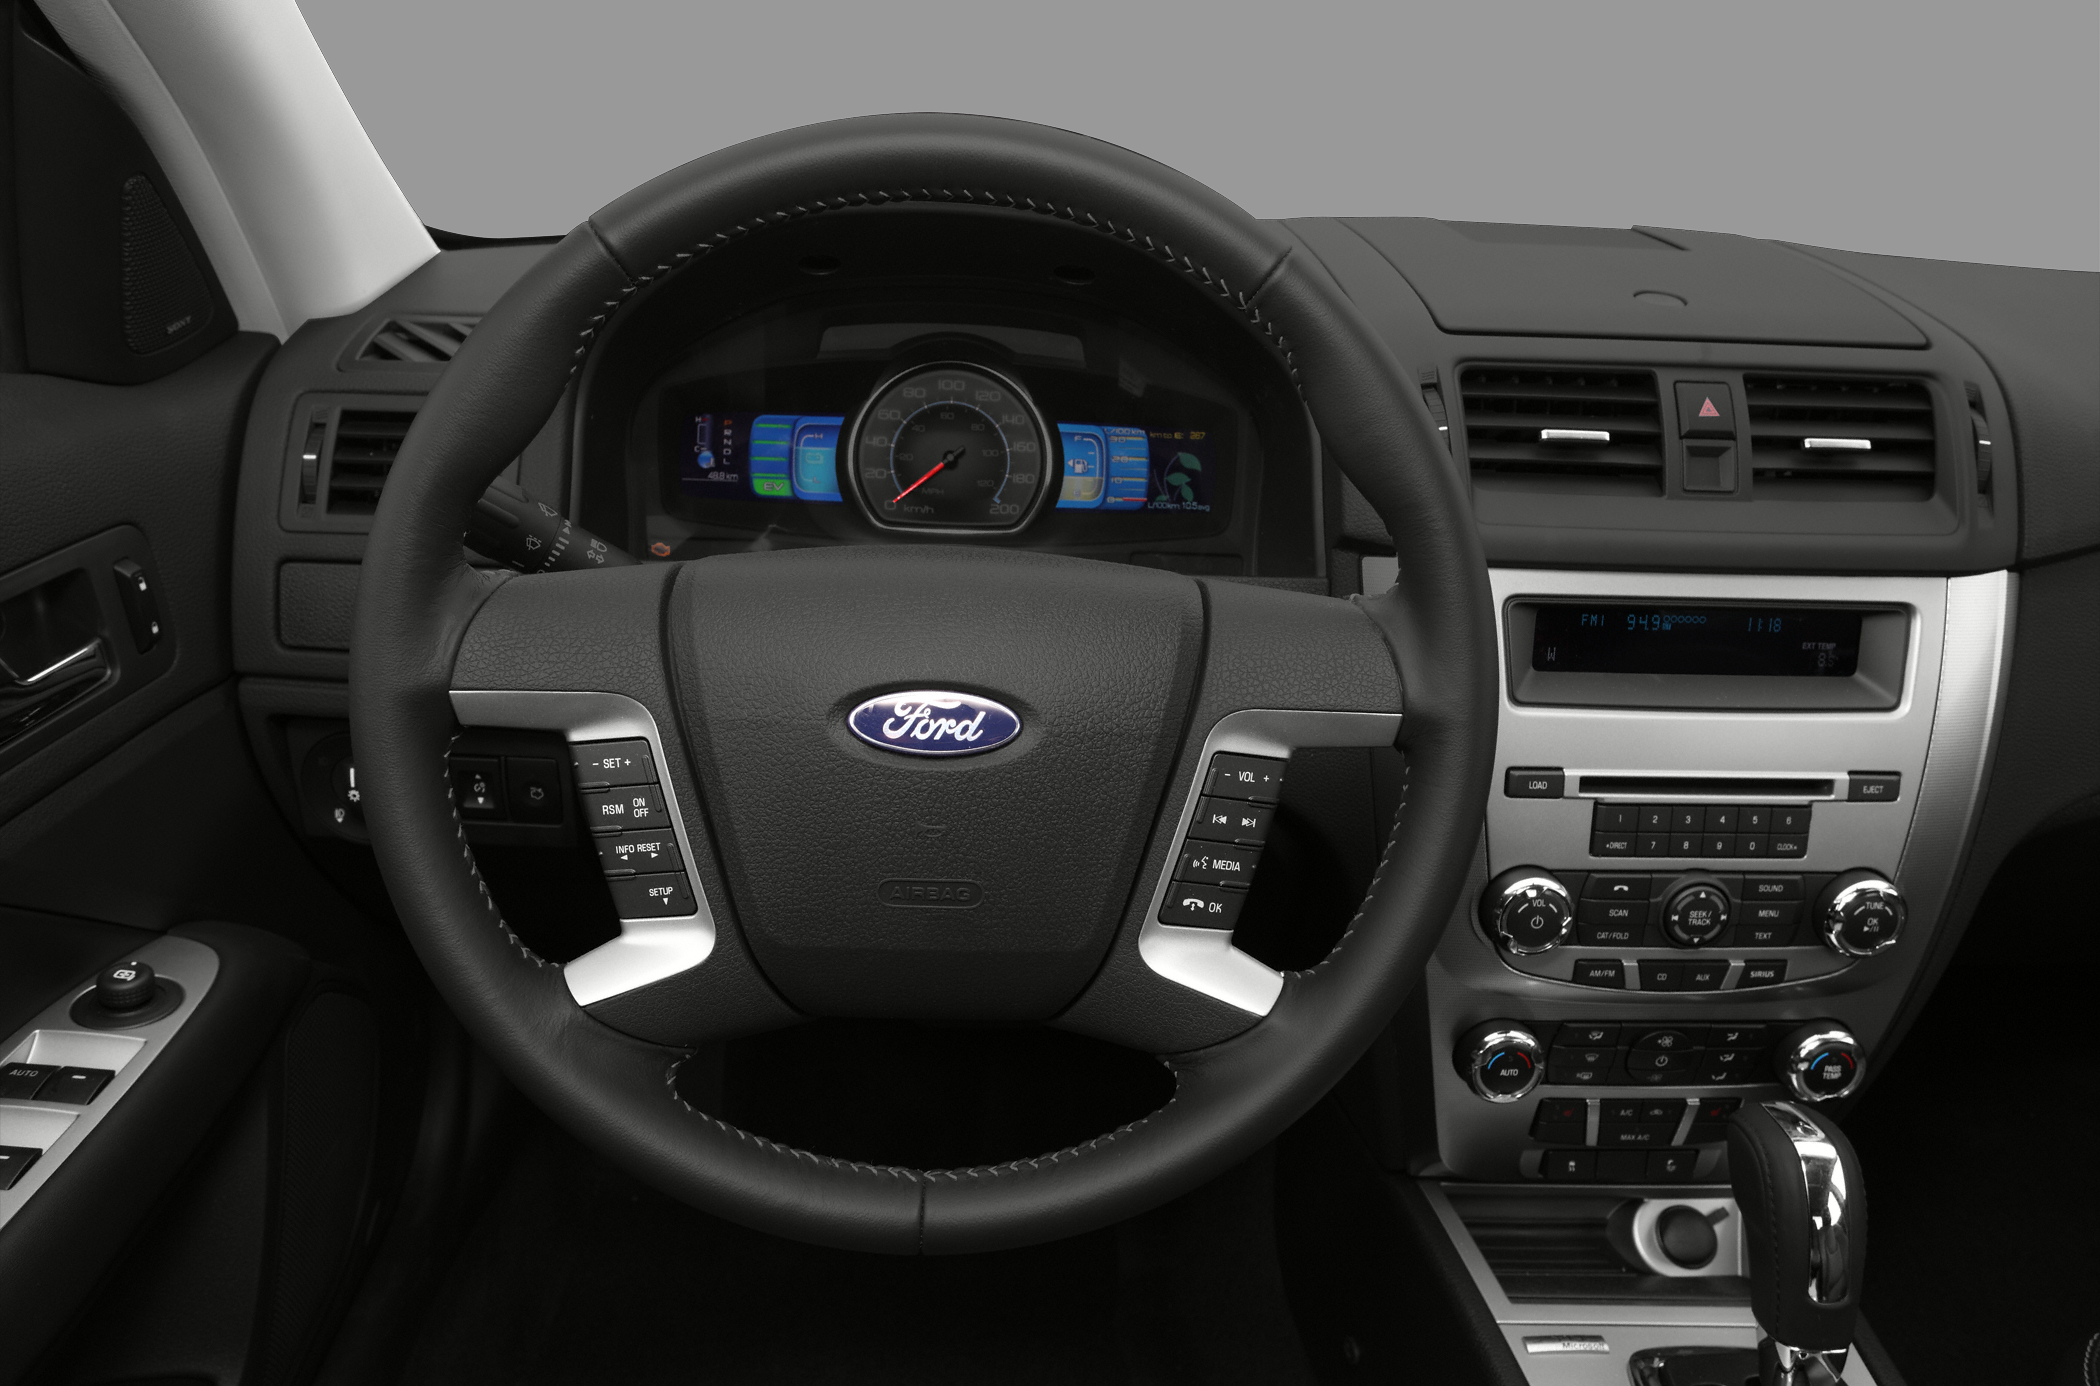 2012 Ford Fusion Hybrid